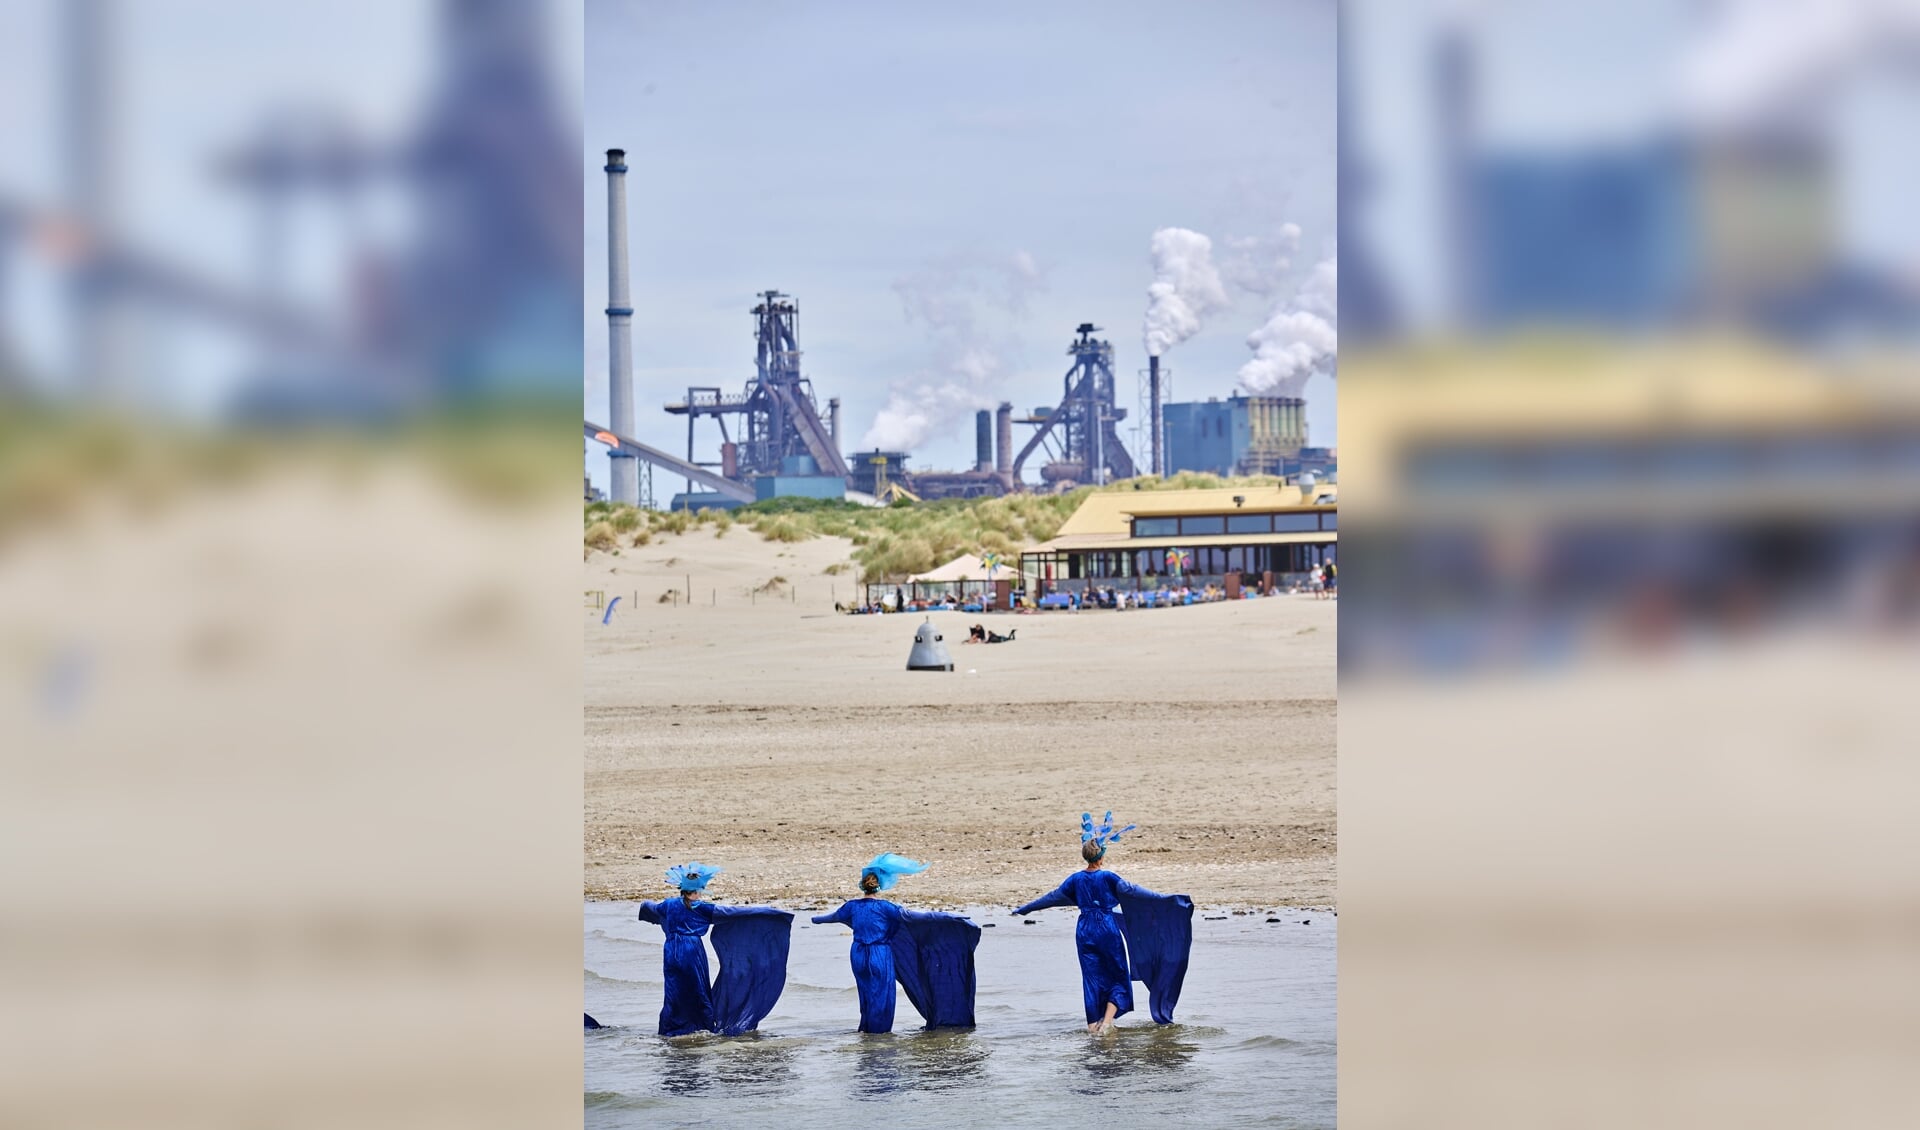 Klimaatactivisten verbeelden de luchtverontreiniging en stijging van de zeespiegel, tegen het decor van de Tata Steel-staalfabriek. 